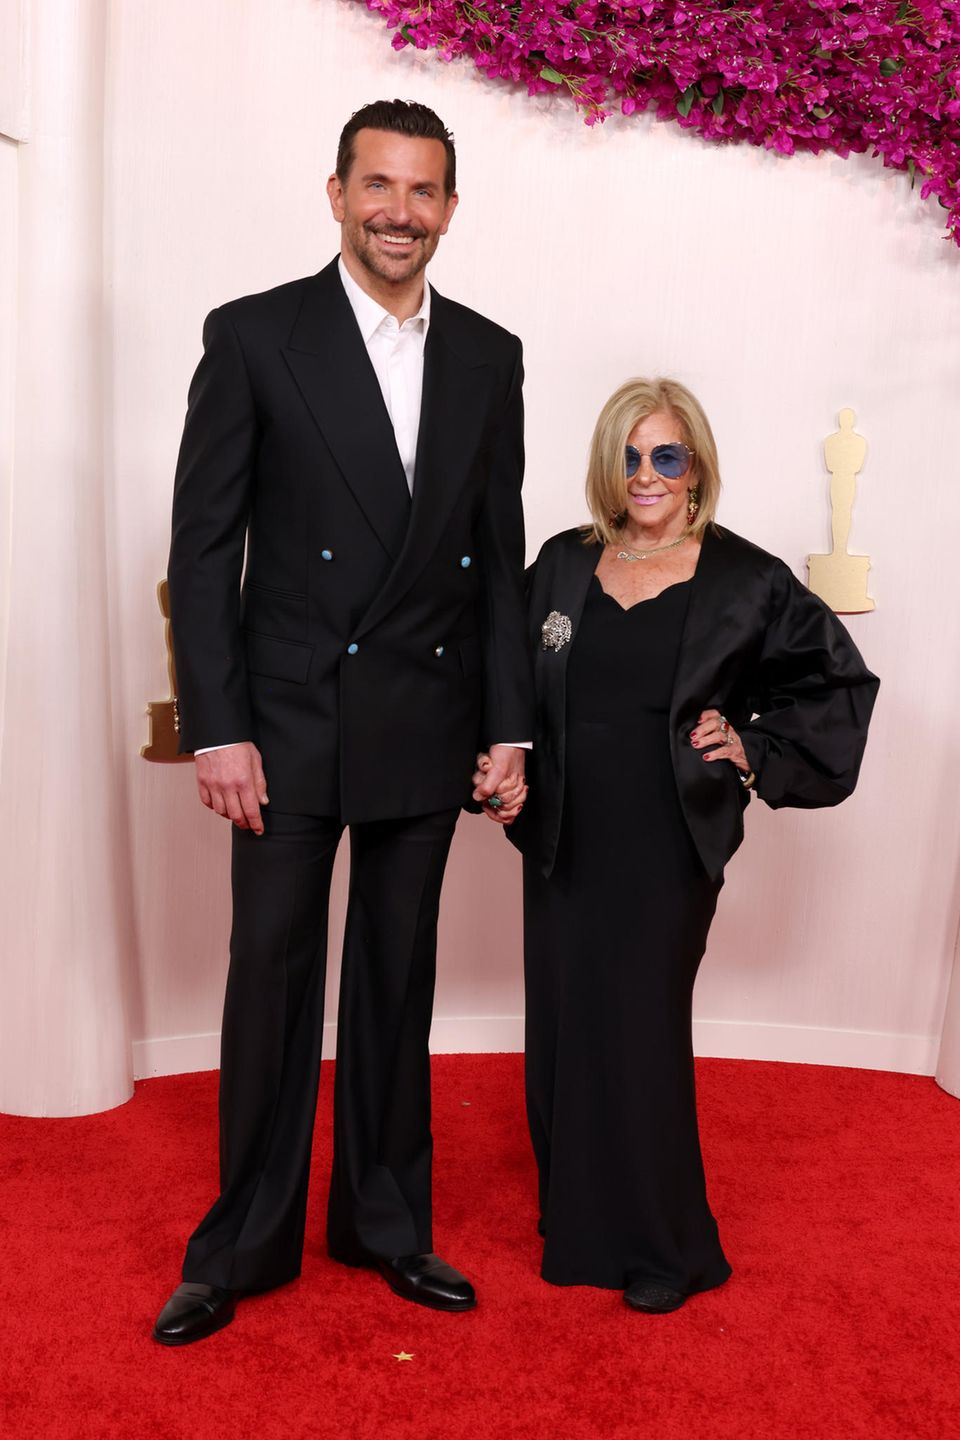 Dieses Duo kennen wir bereits! Es ist nicht das erste Mal, dass Bradley Cooper seine Mutter mit auf den Red Carpet genommen hat. Und auch bei den diesjährigen Oscars zeigt er sich Hand in Hand mit Mama Gloria.